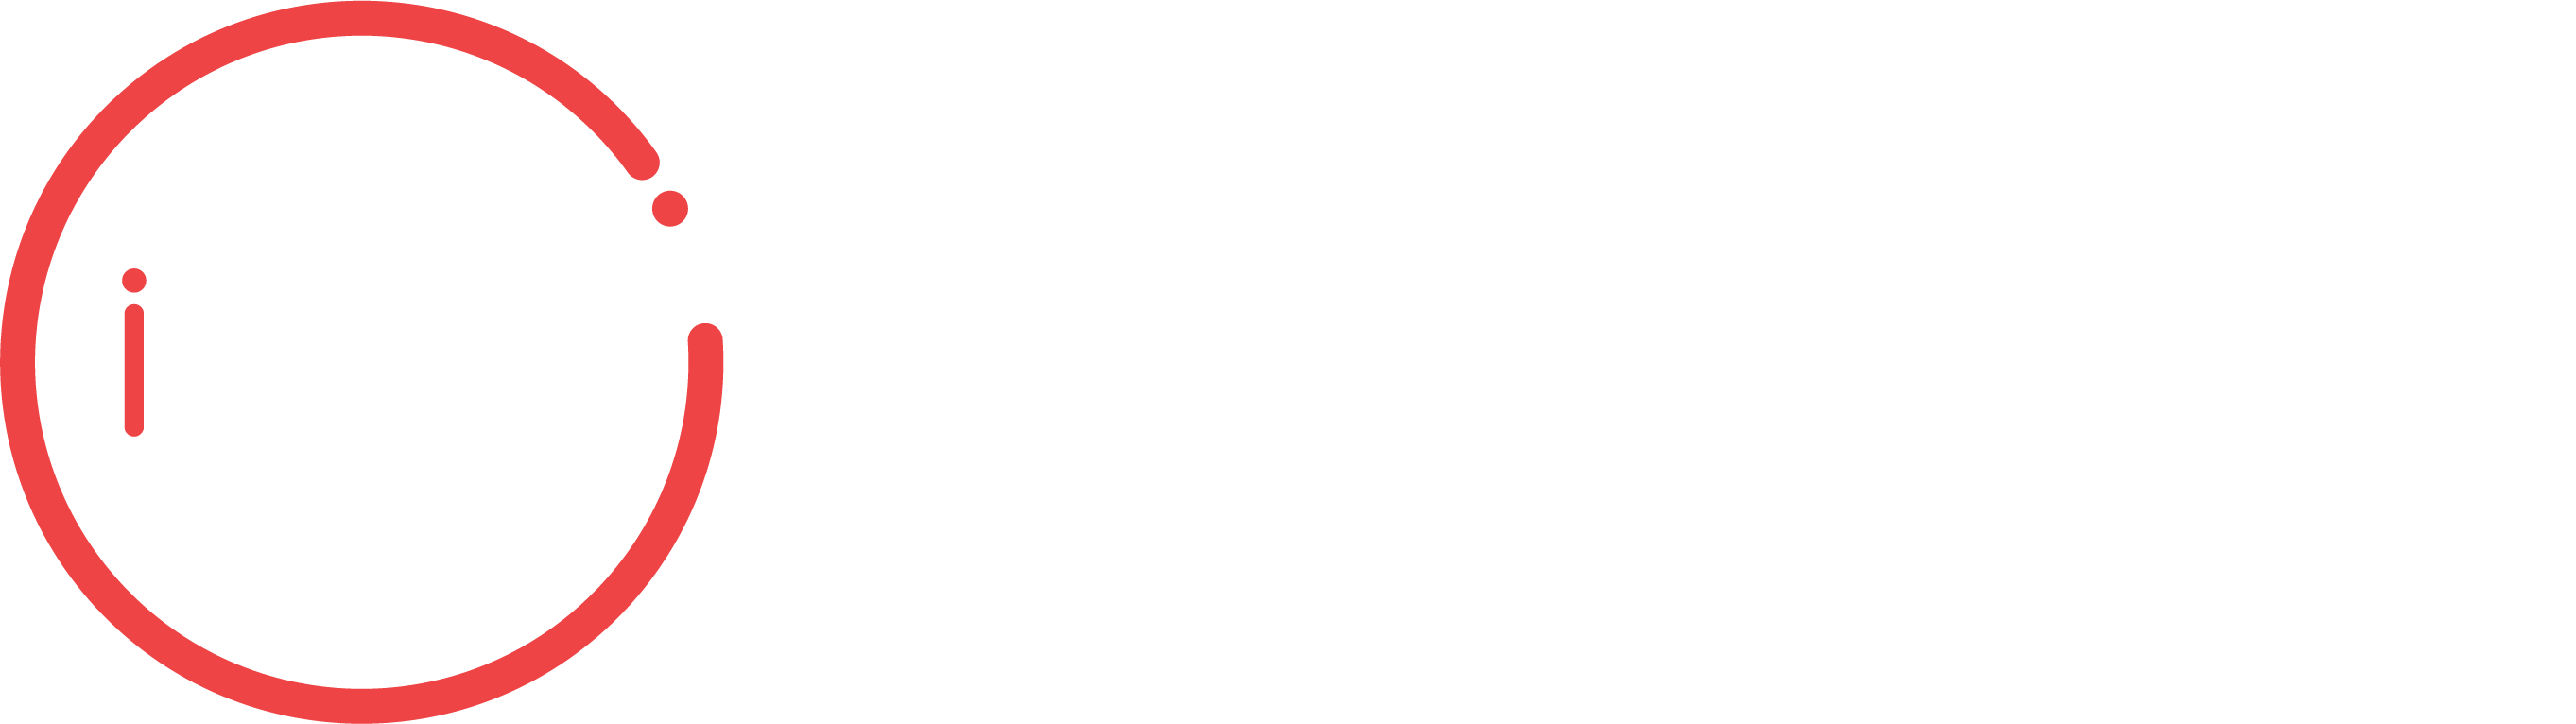 BtoB Marketers' Summit